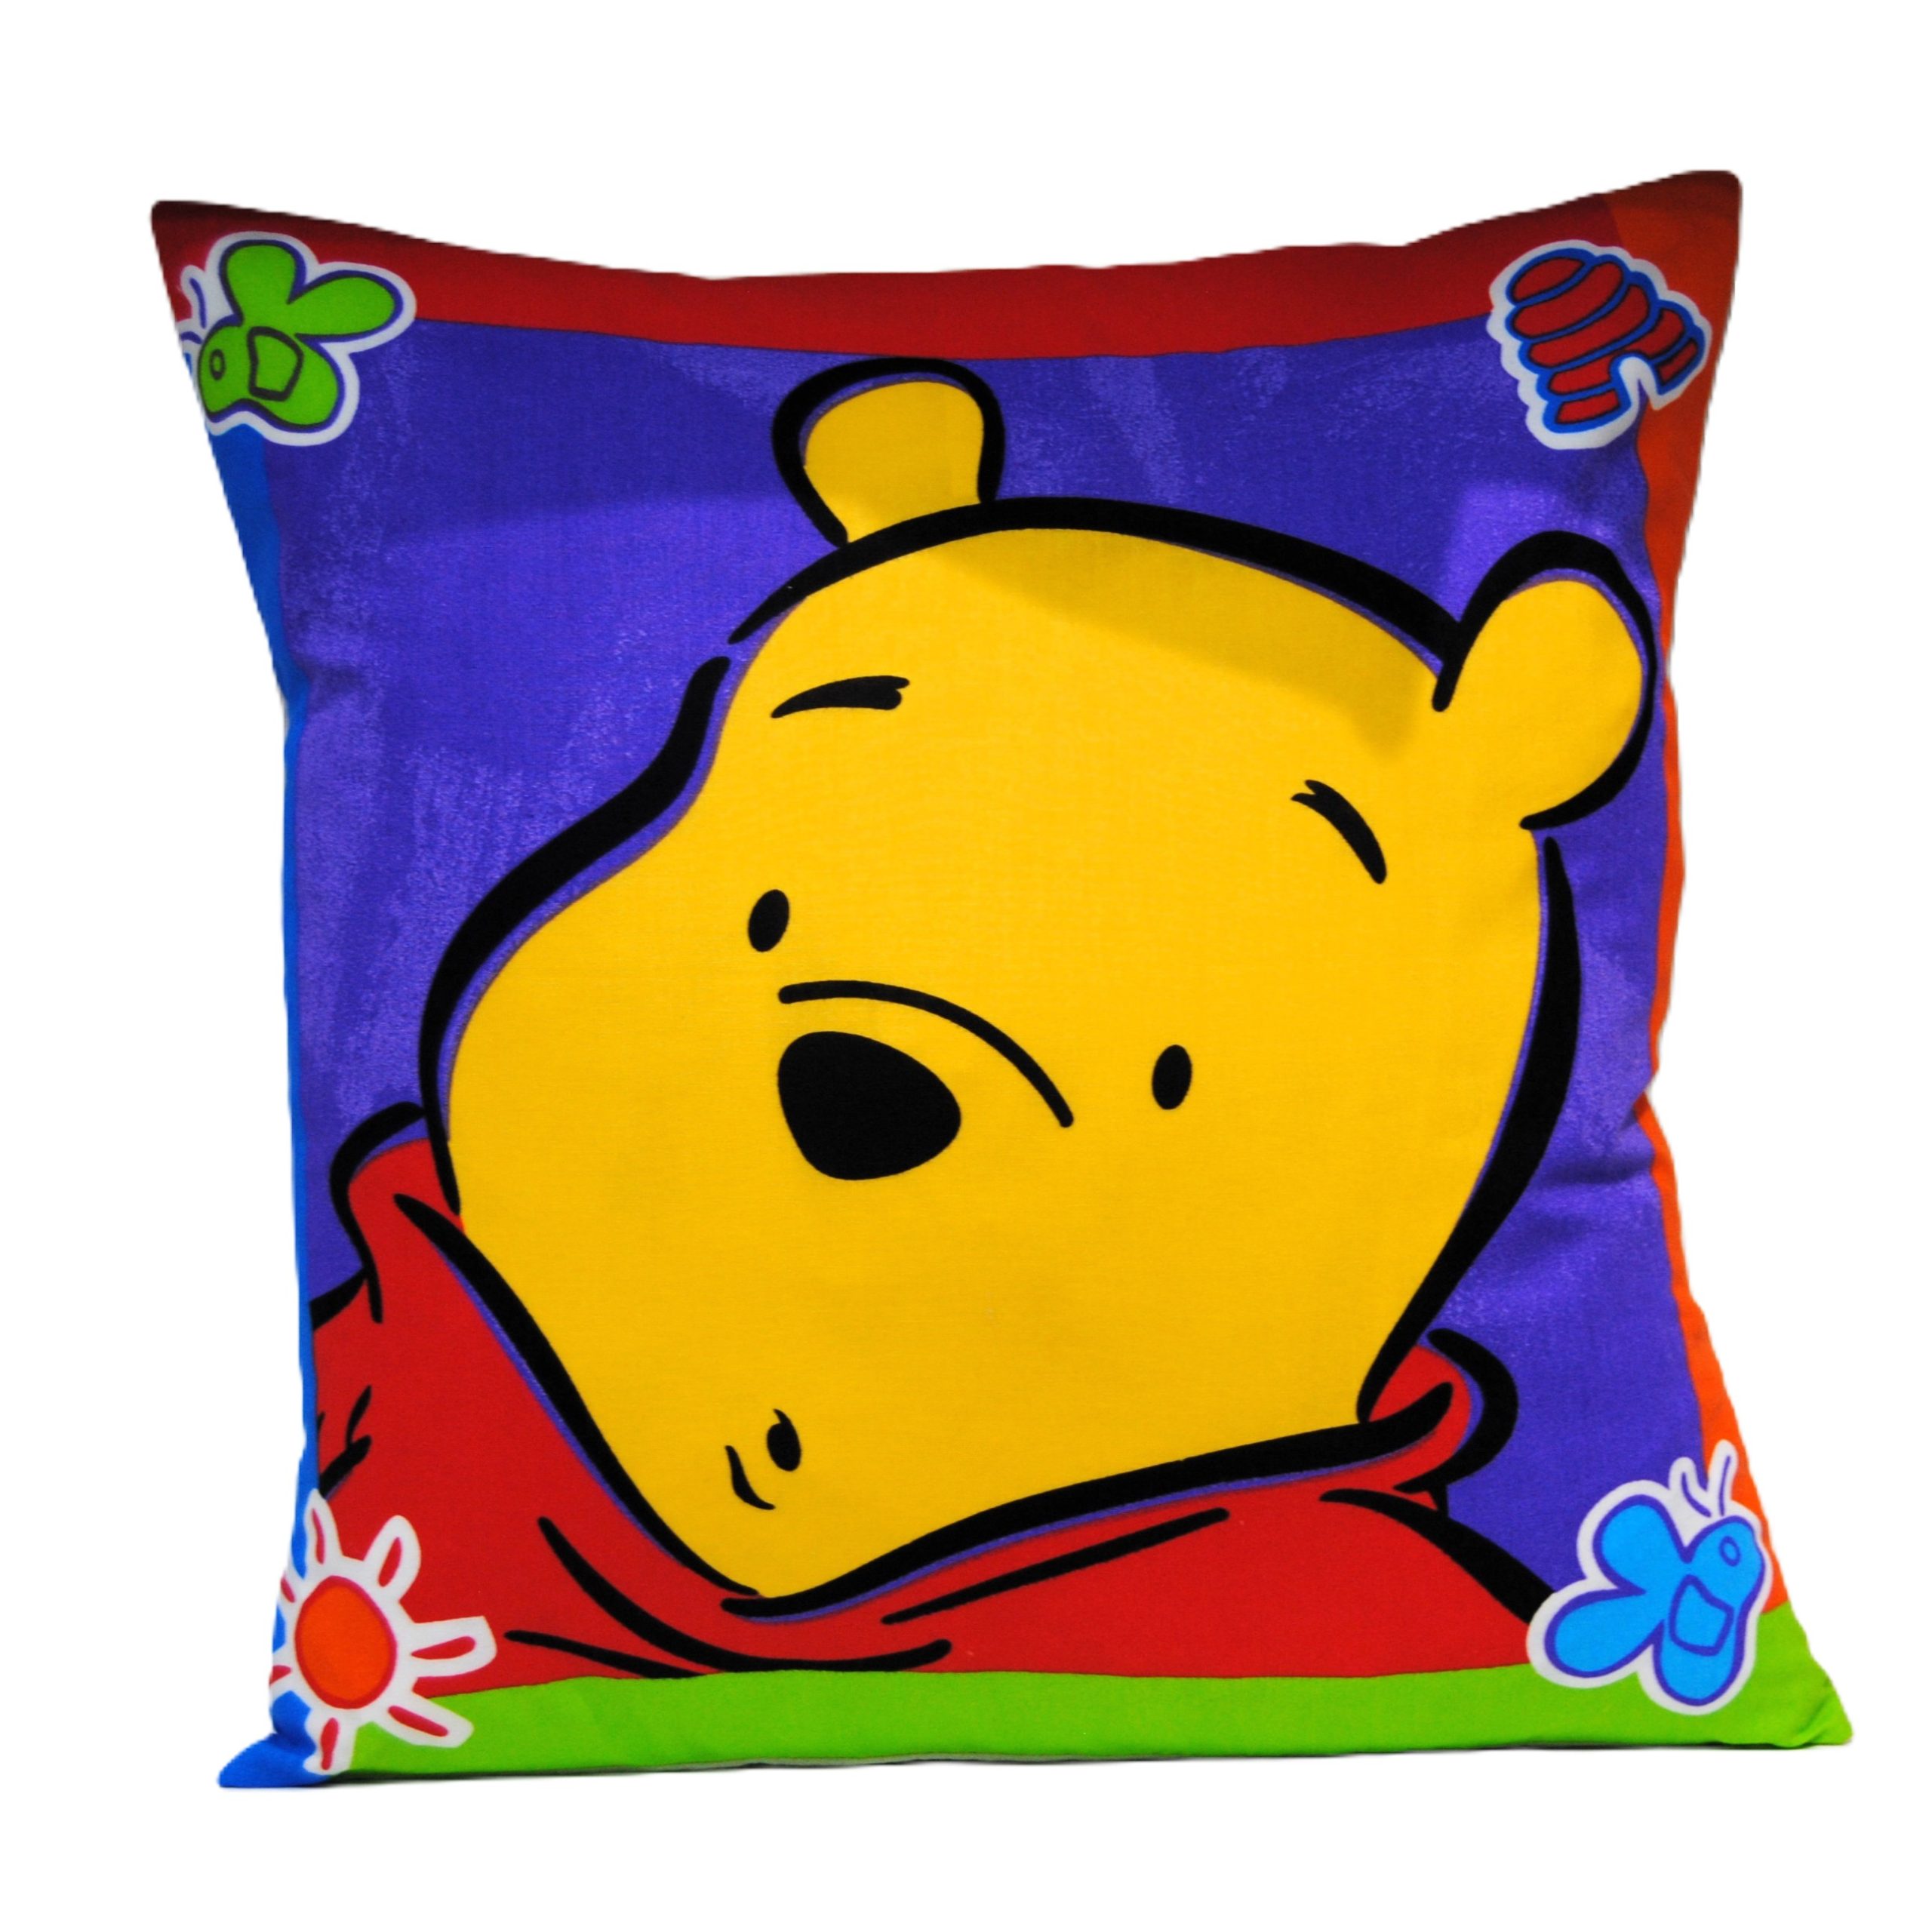 Winnie The Pooh Cushion